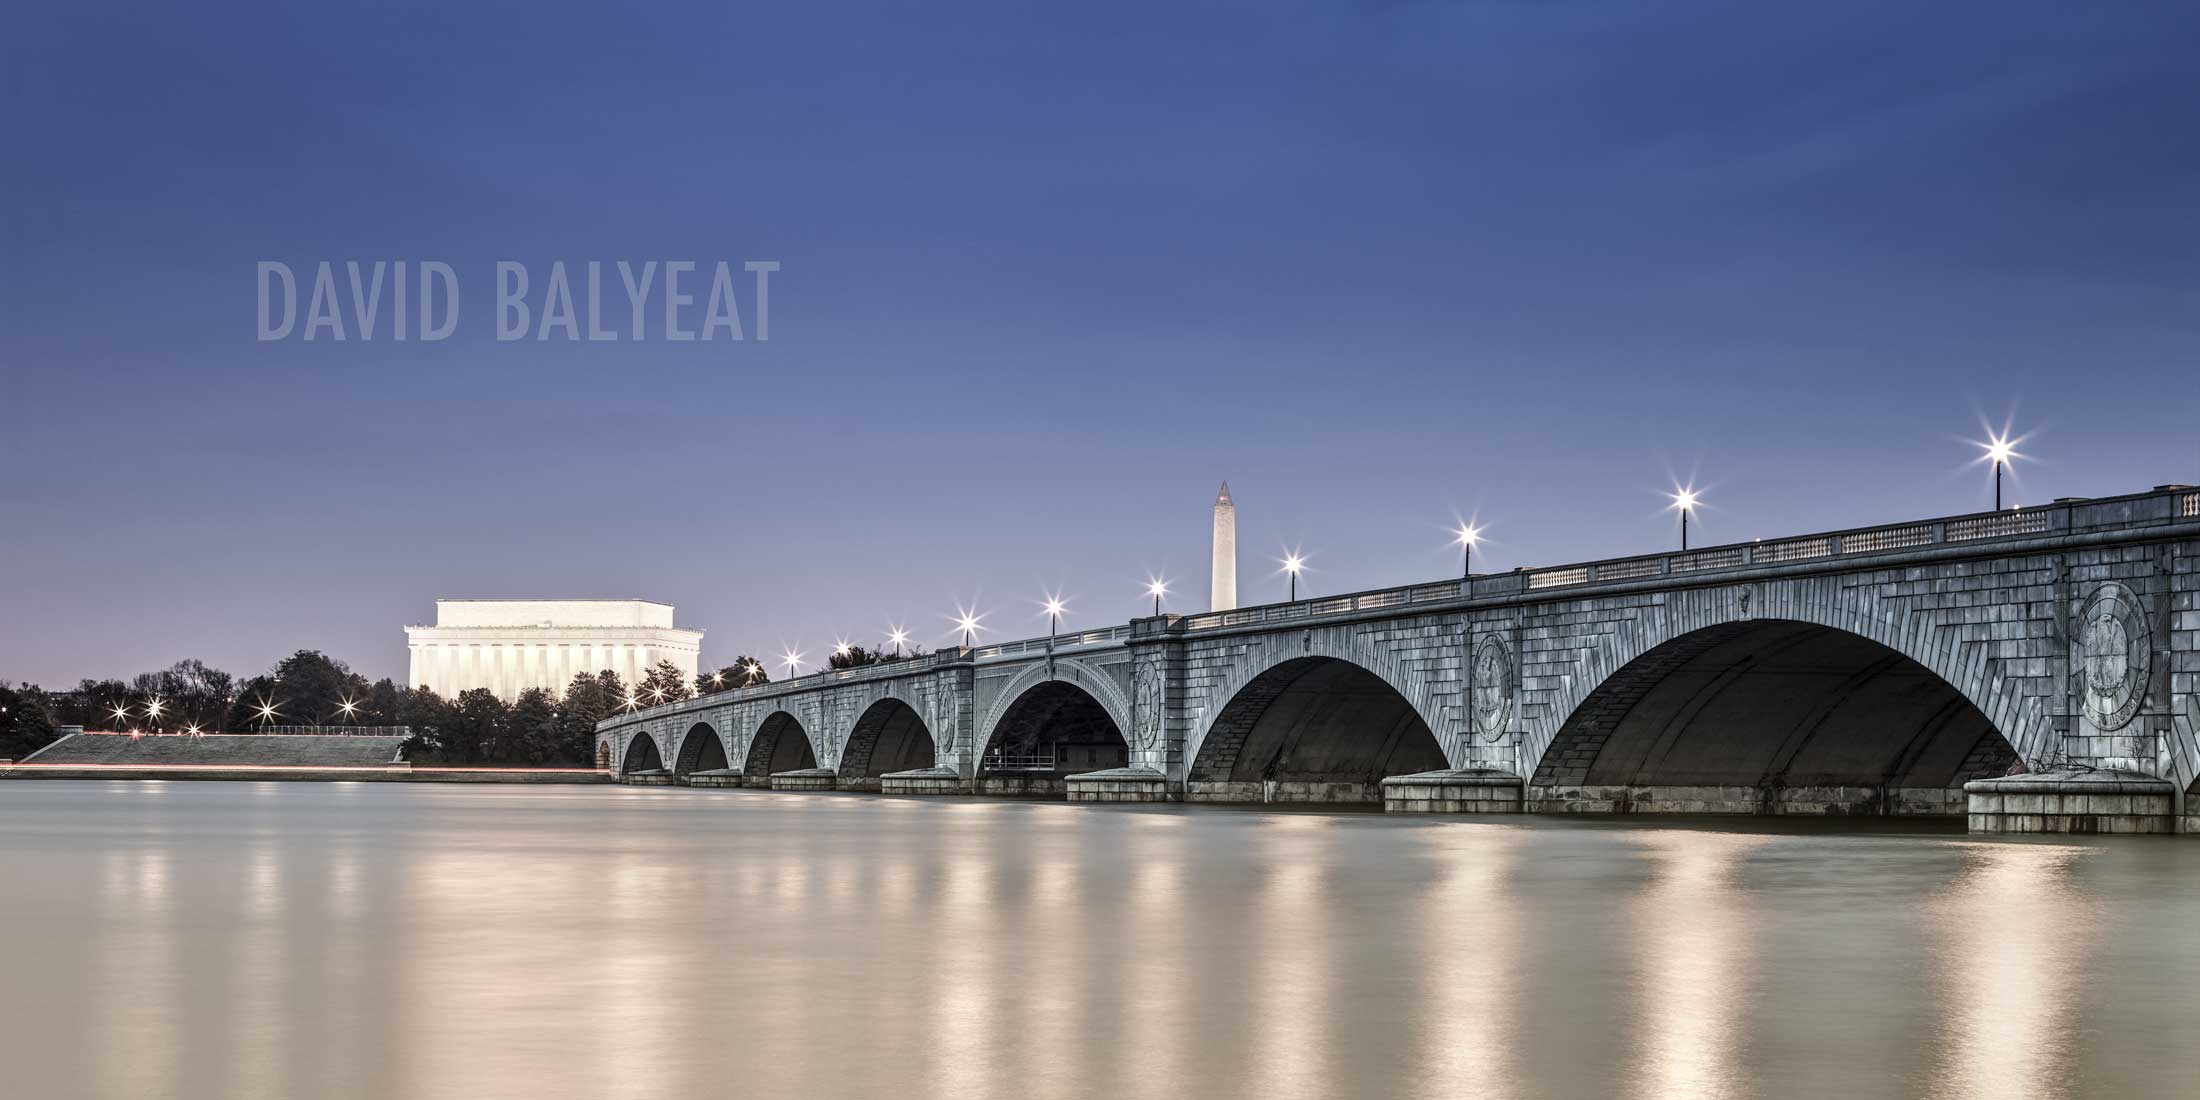 Along the Potomac River in Washington DC and Arlington Virginia